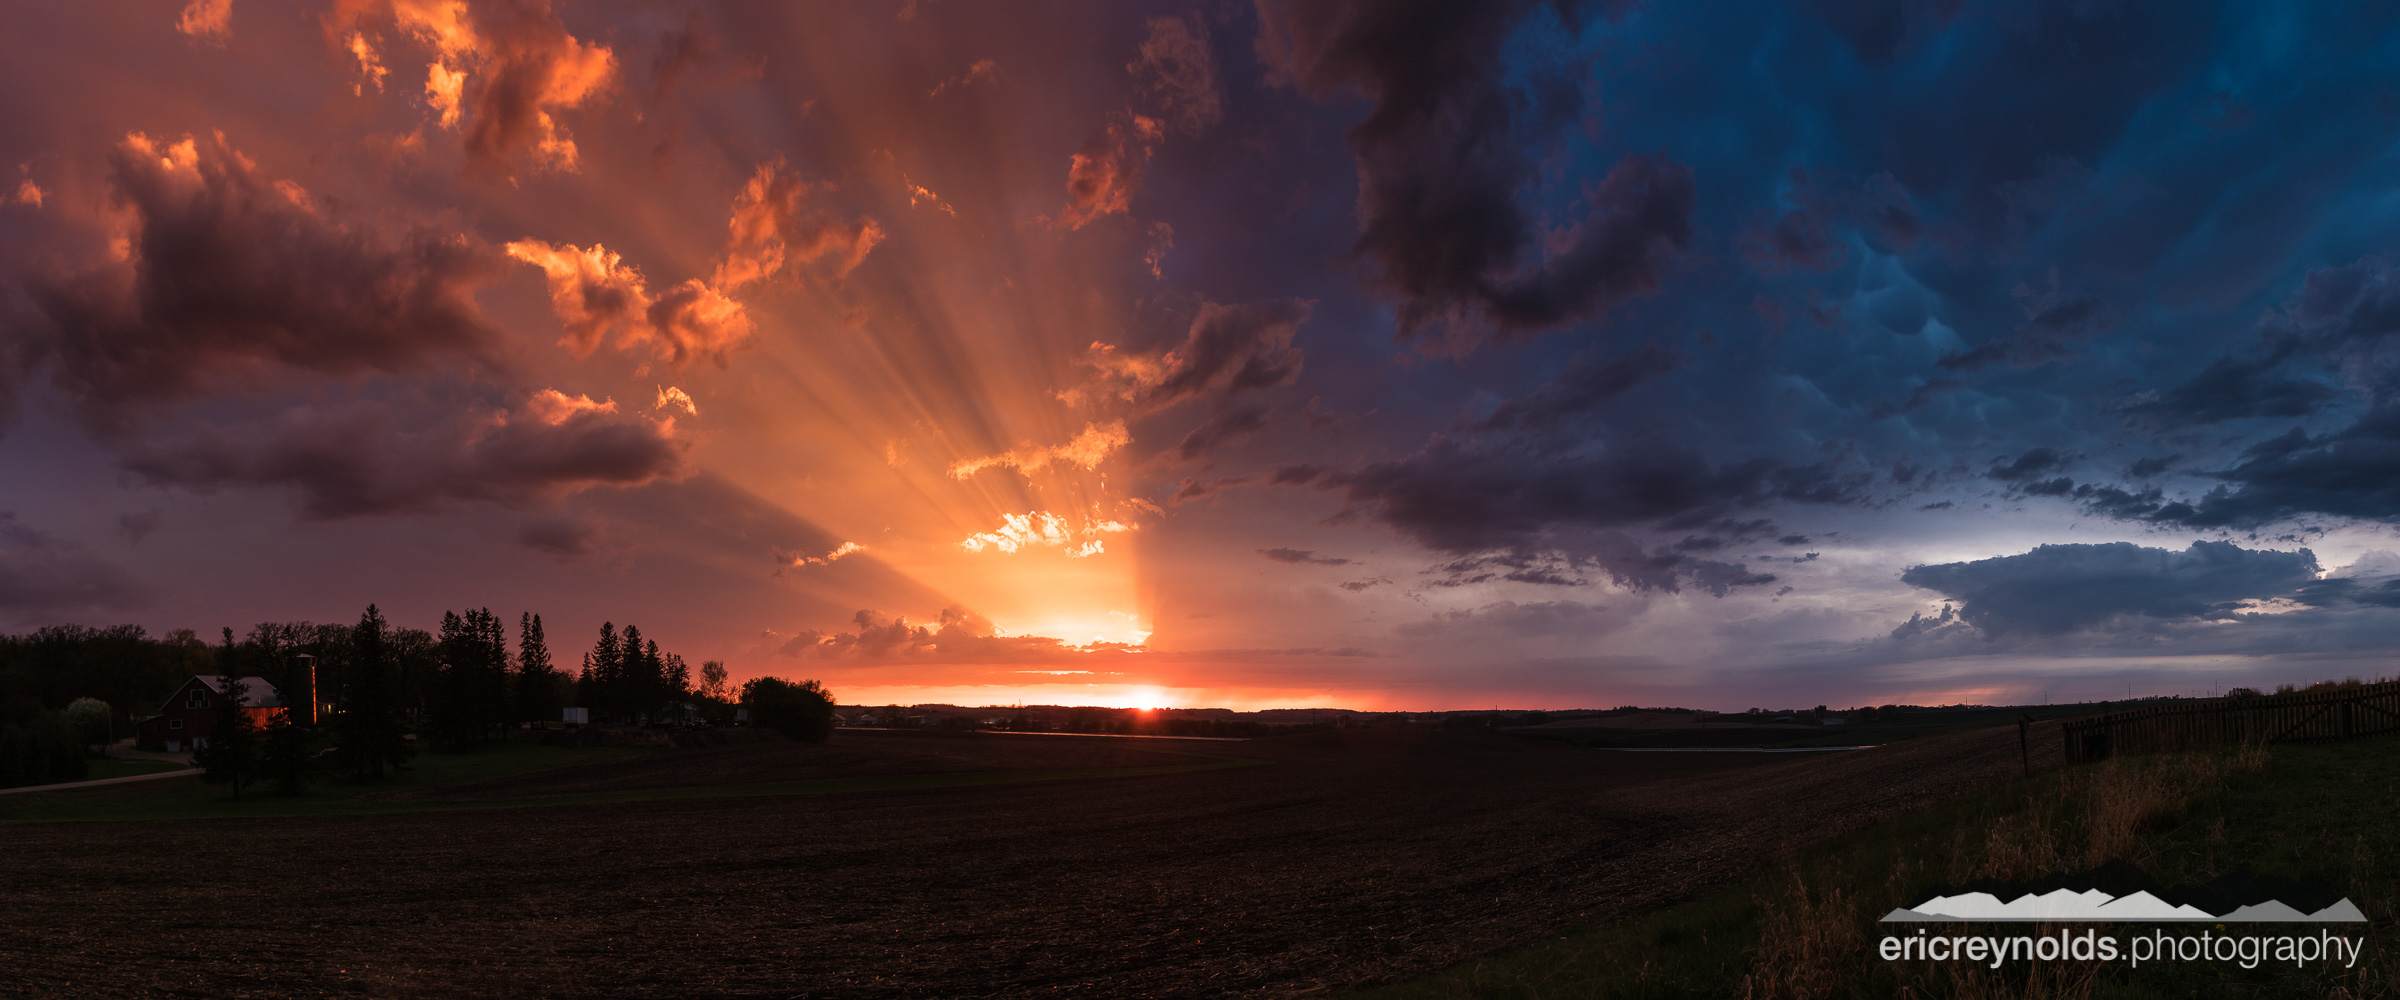 Sun Rays over the Farm by Eric Reynolds - Landscape Photographer